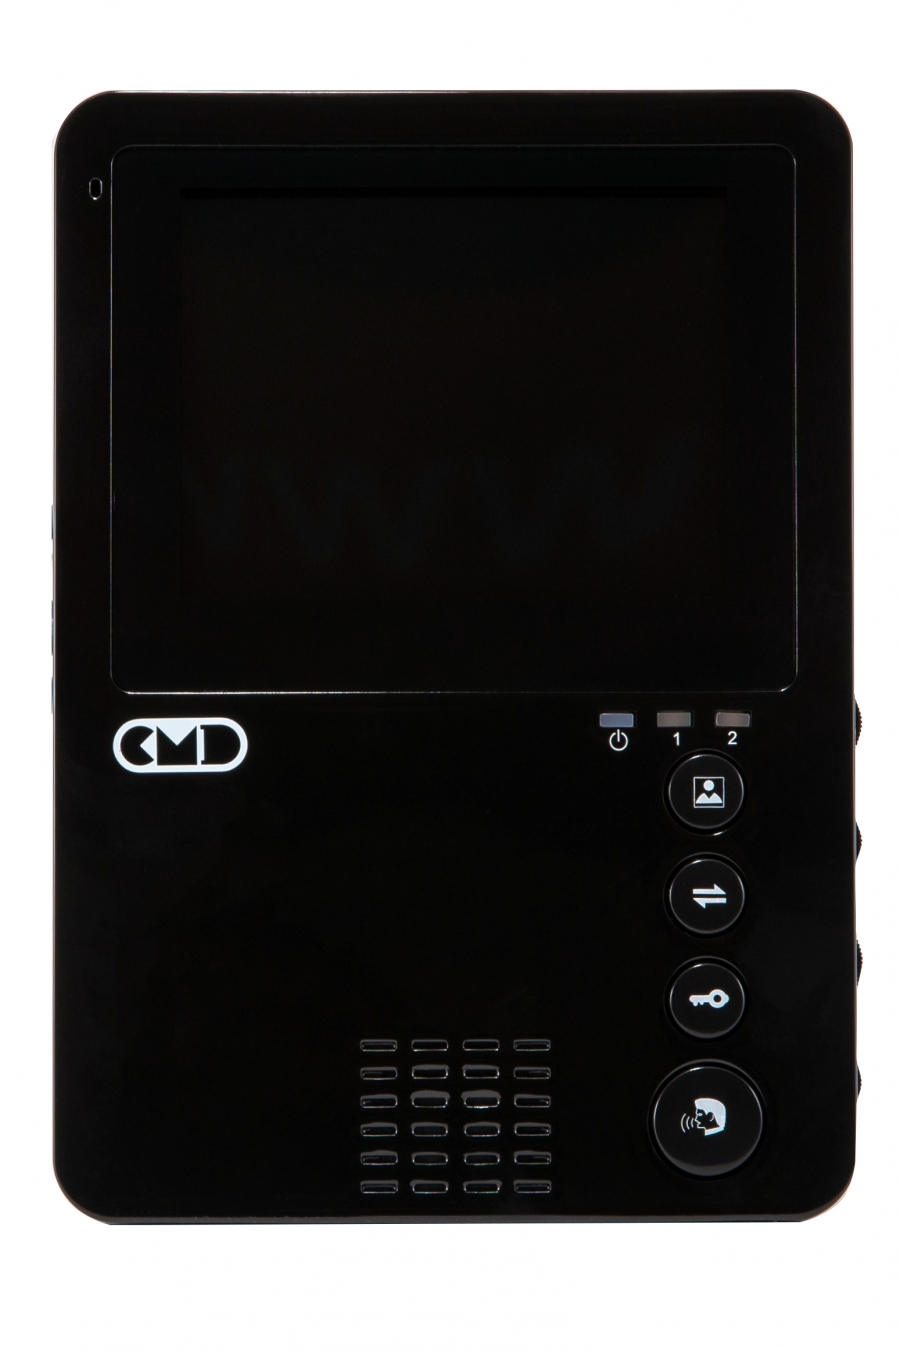  Элеком37. CMD-VD40 BLACK Цветной видеодомофон 4 дюйма, черный. Фото.